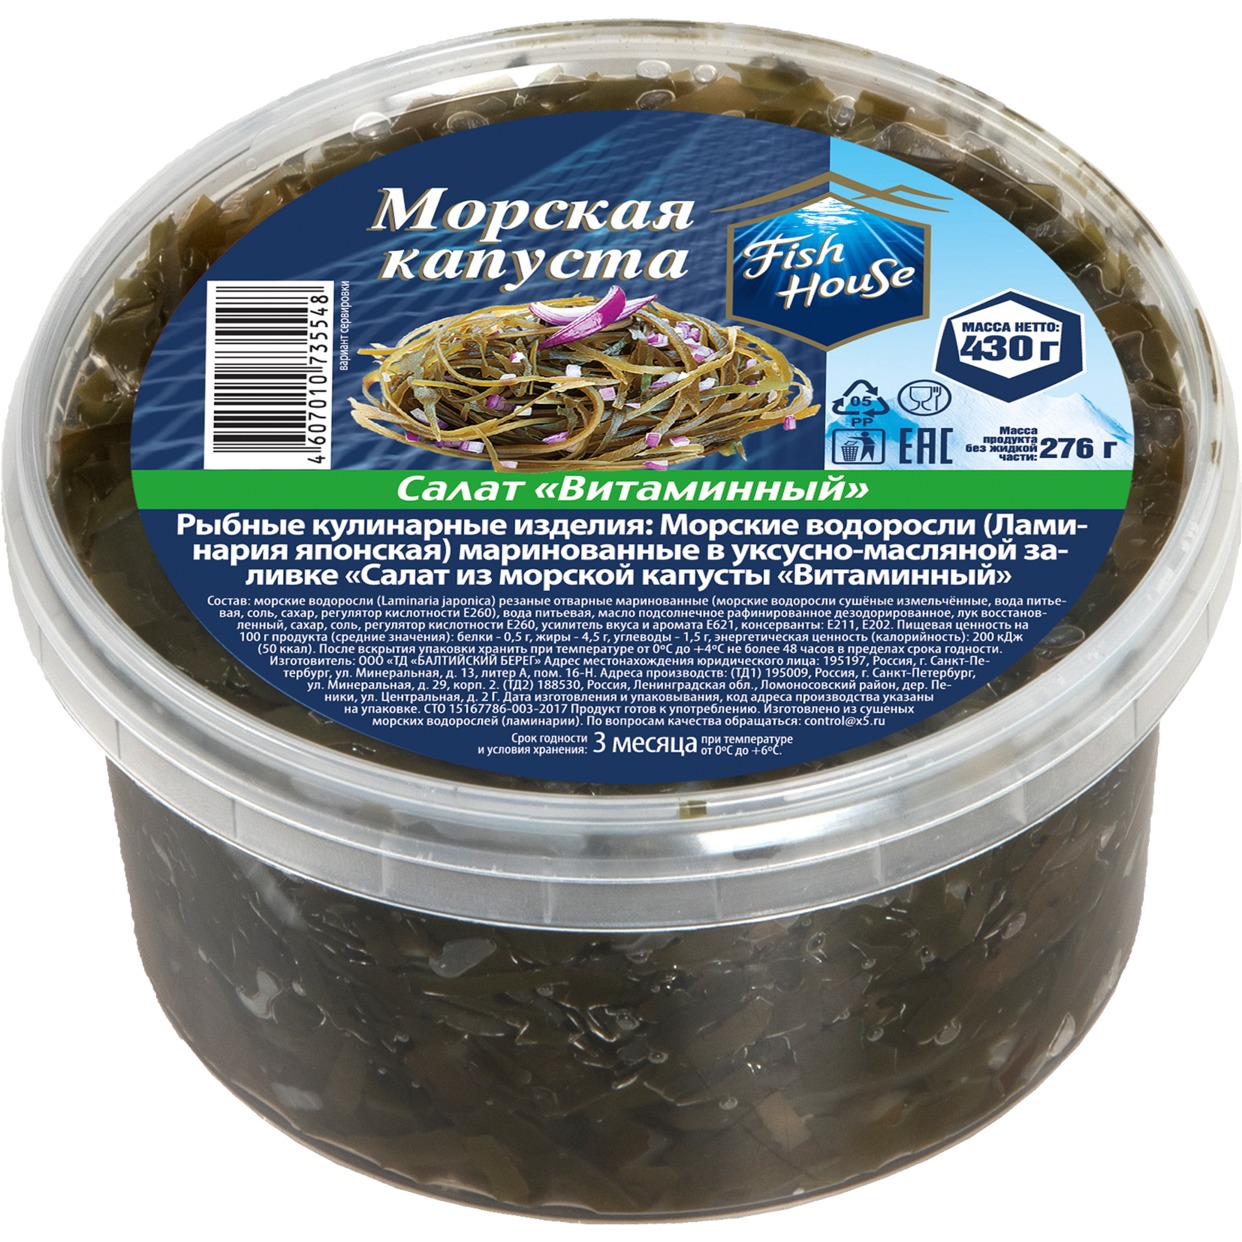 Салат из морской капусты "Витаминный" FISH HOUSE 0,430 кг 1/8 по акции в Пятерочке